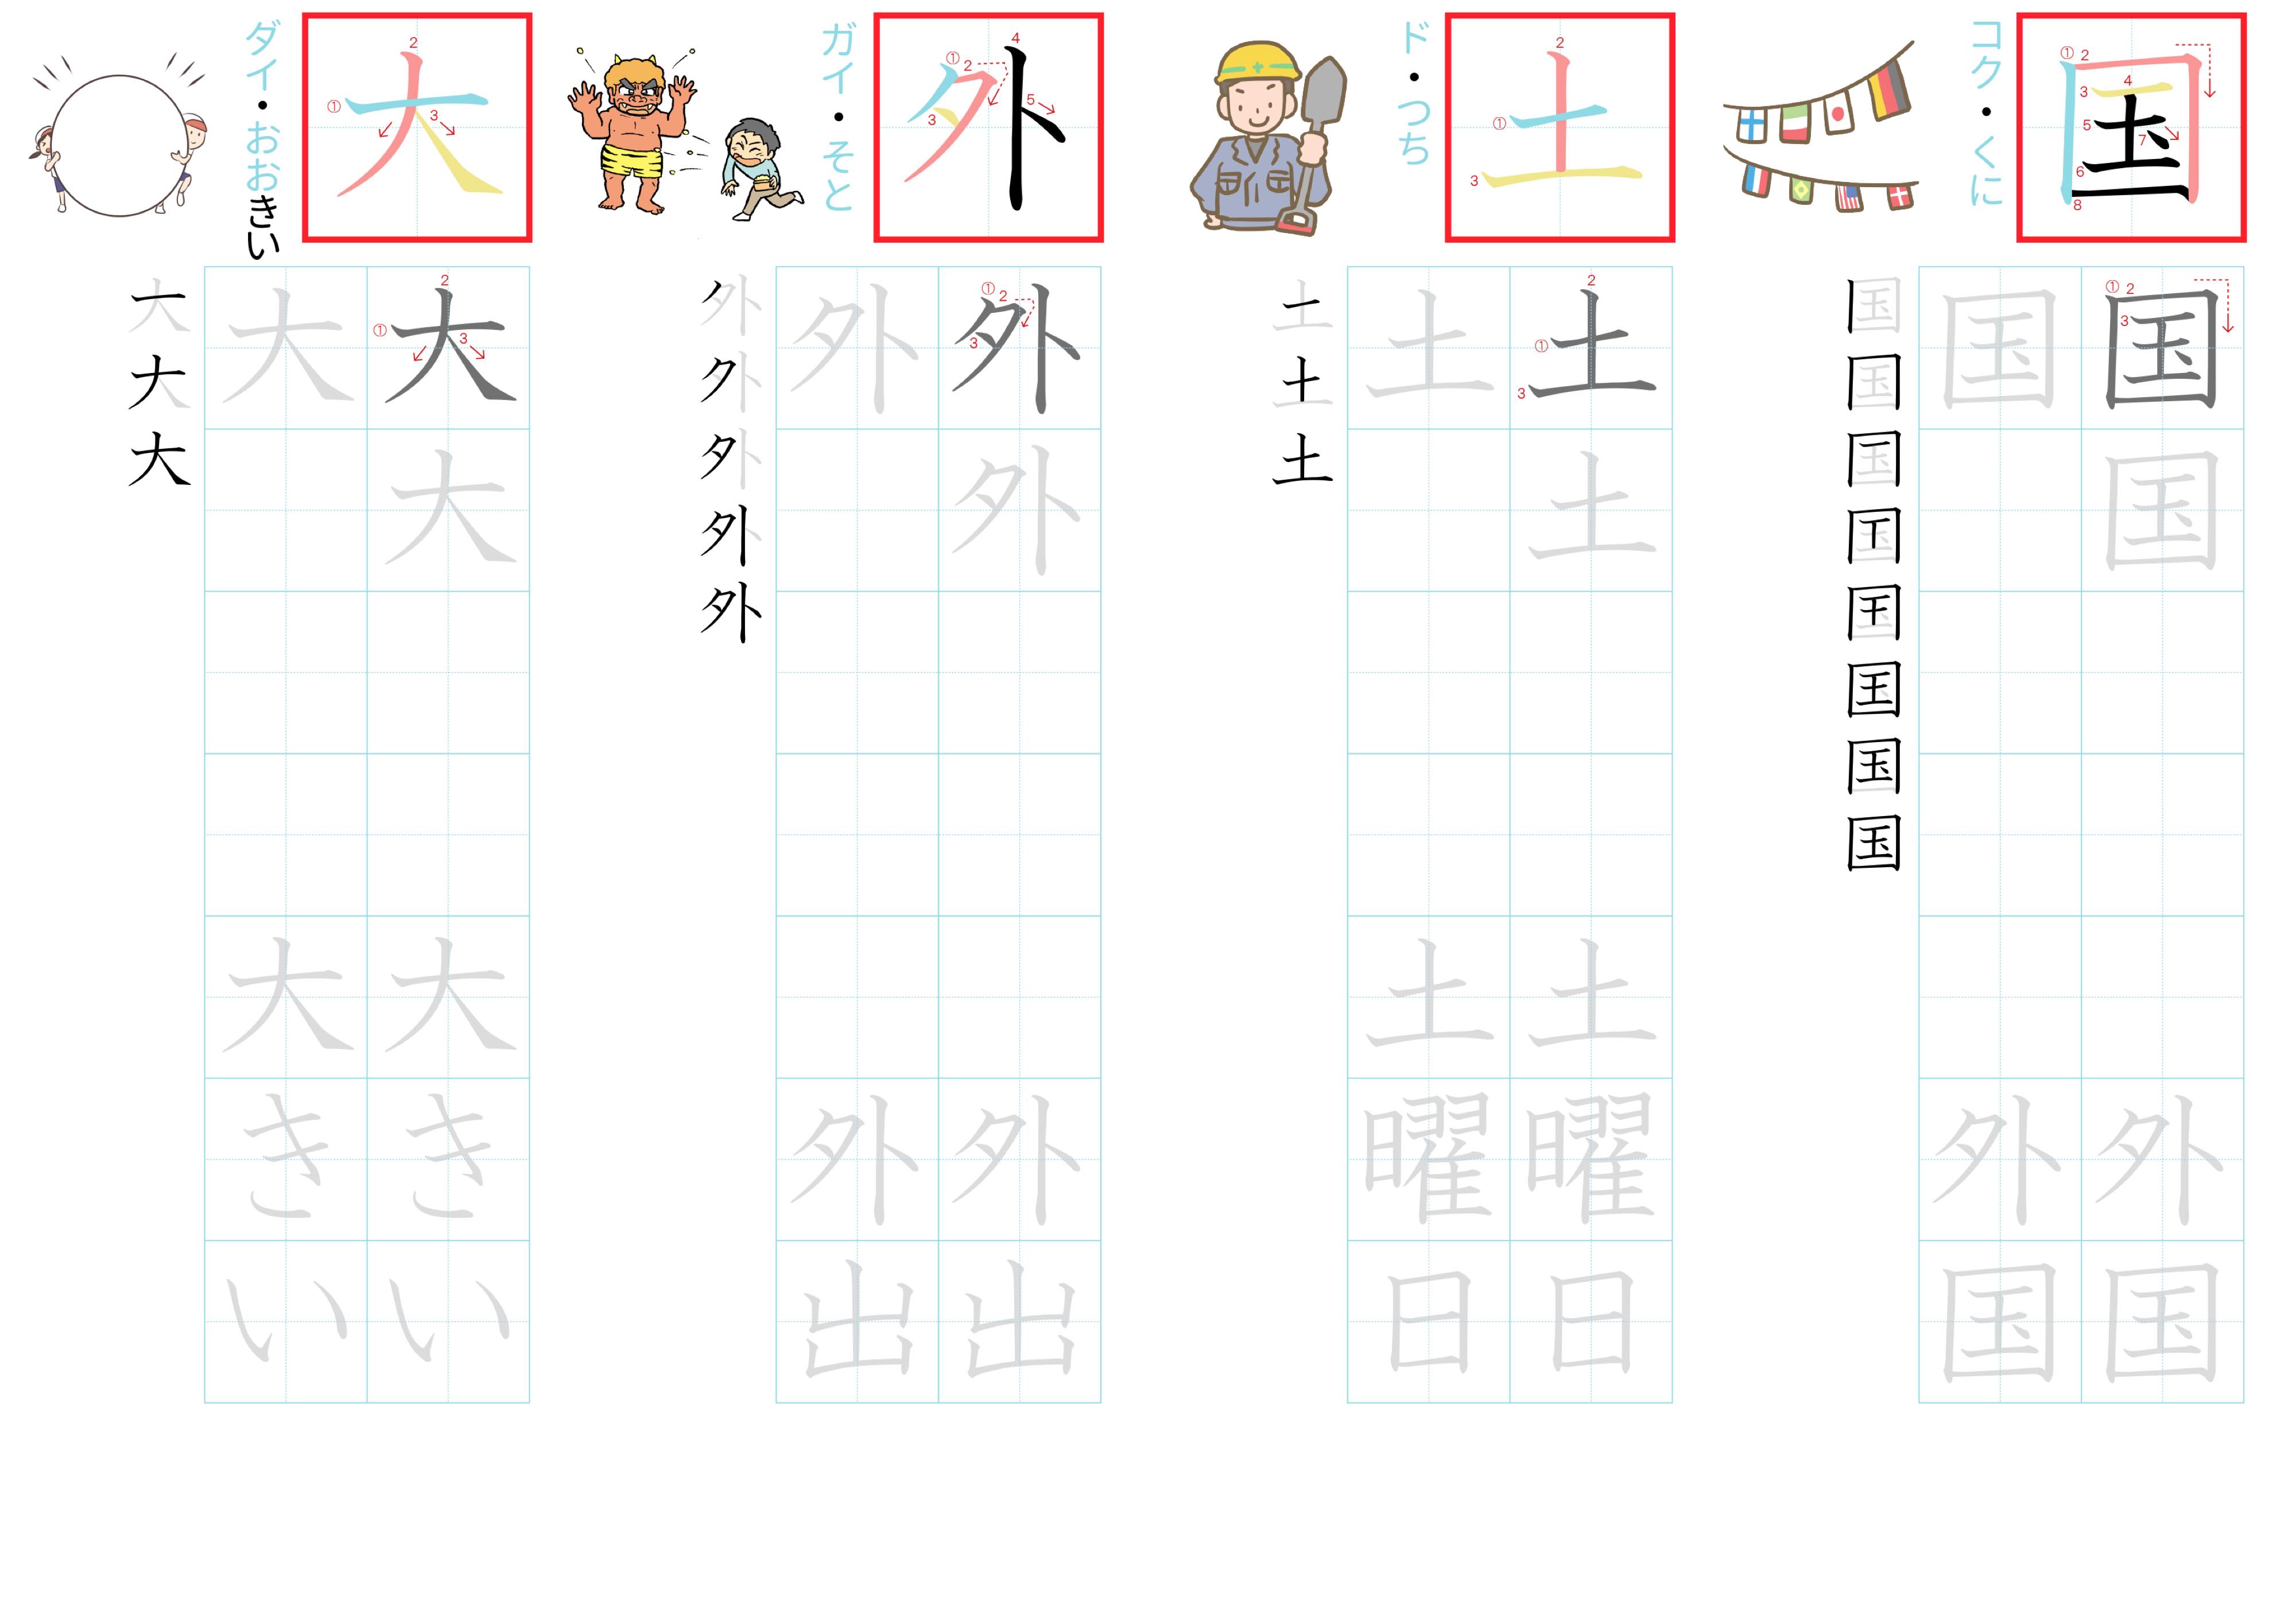 kanji-practice-card-n5-japanese-009